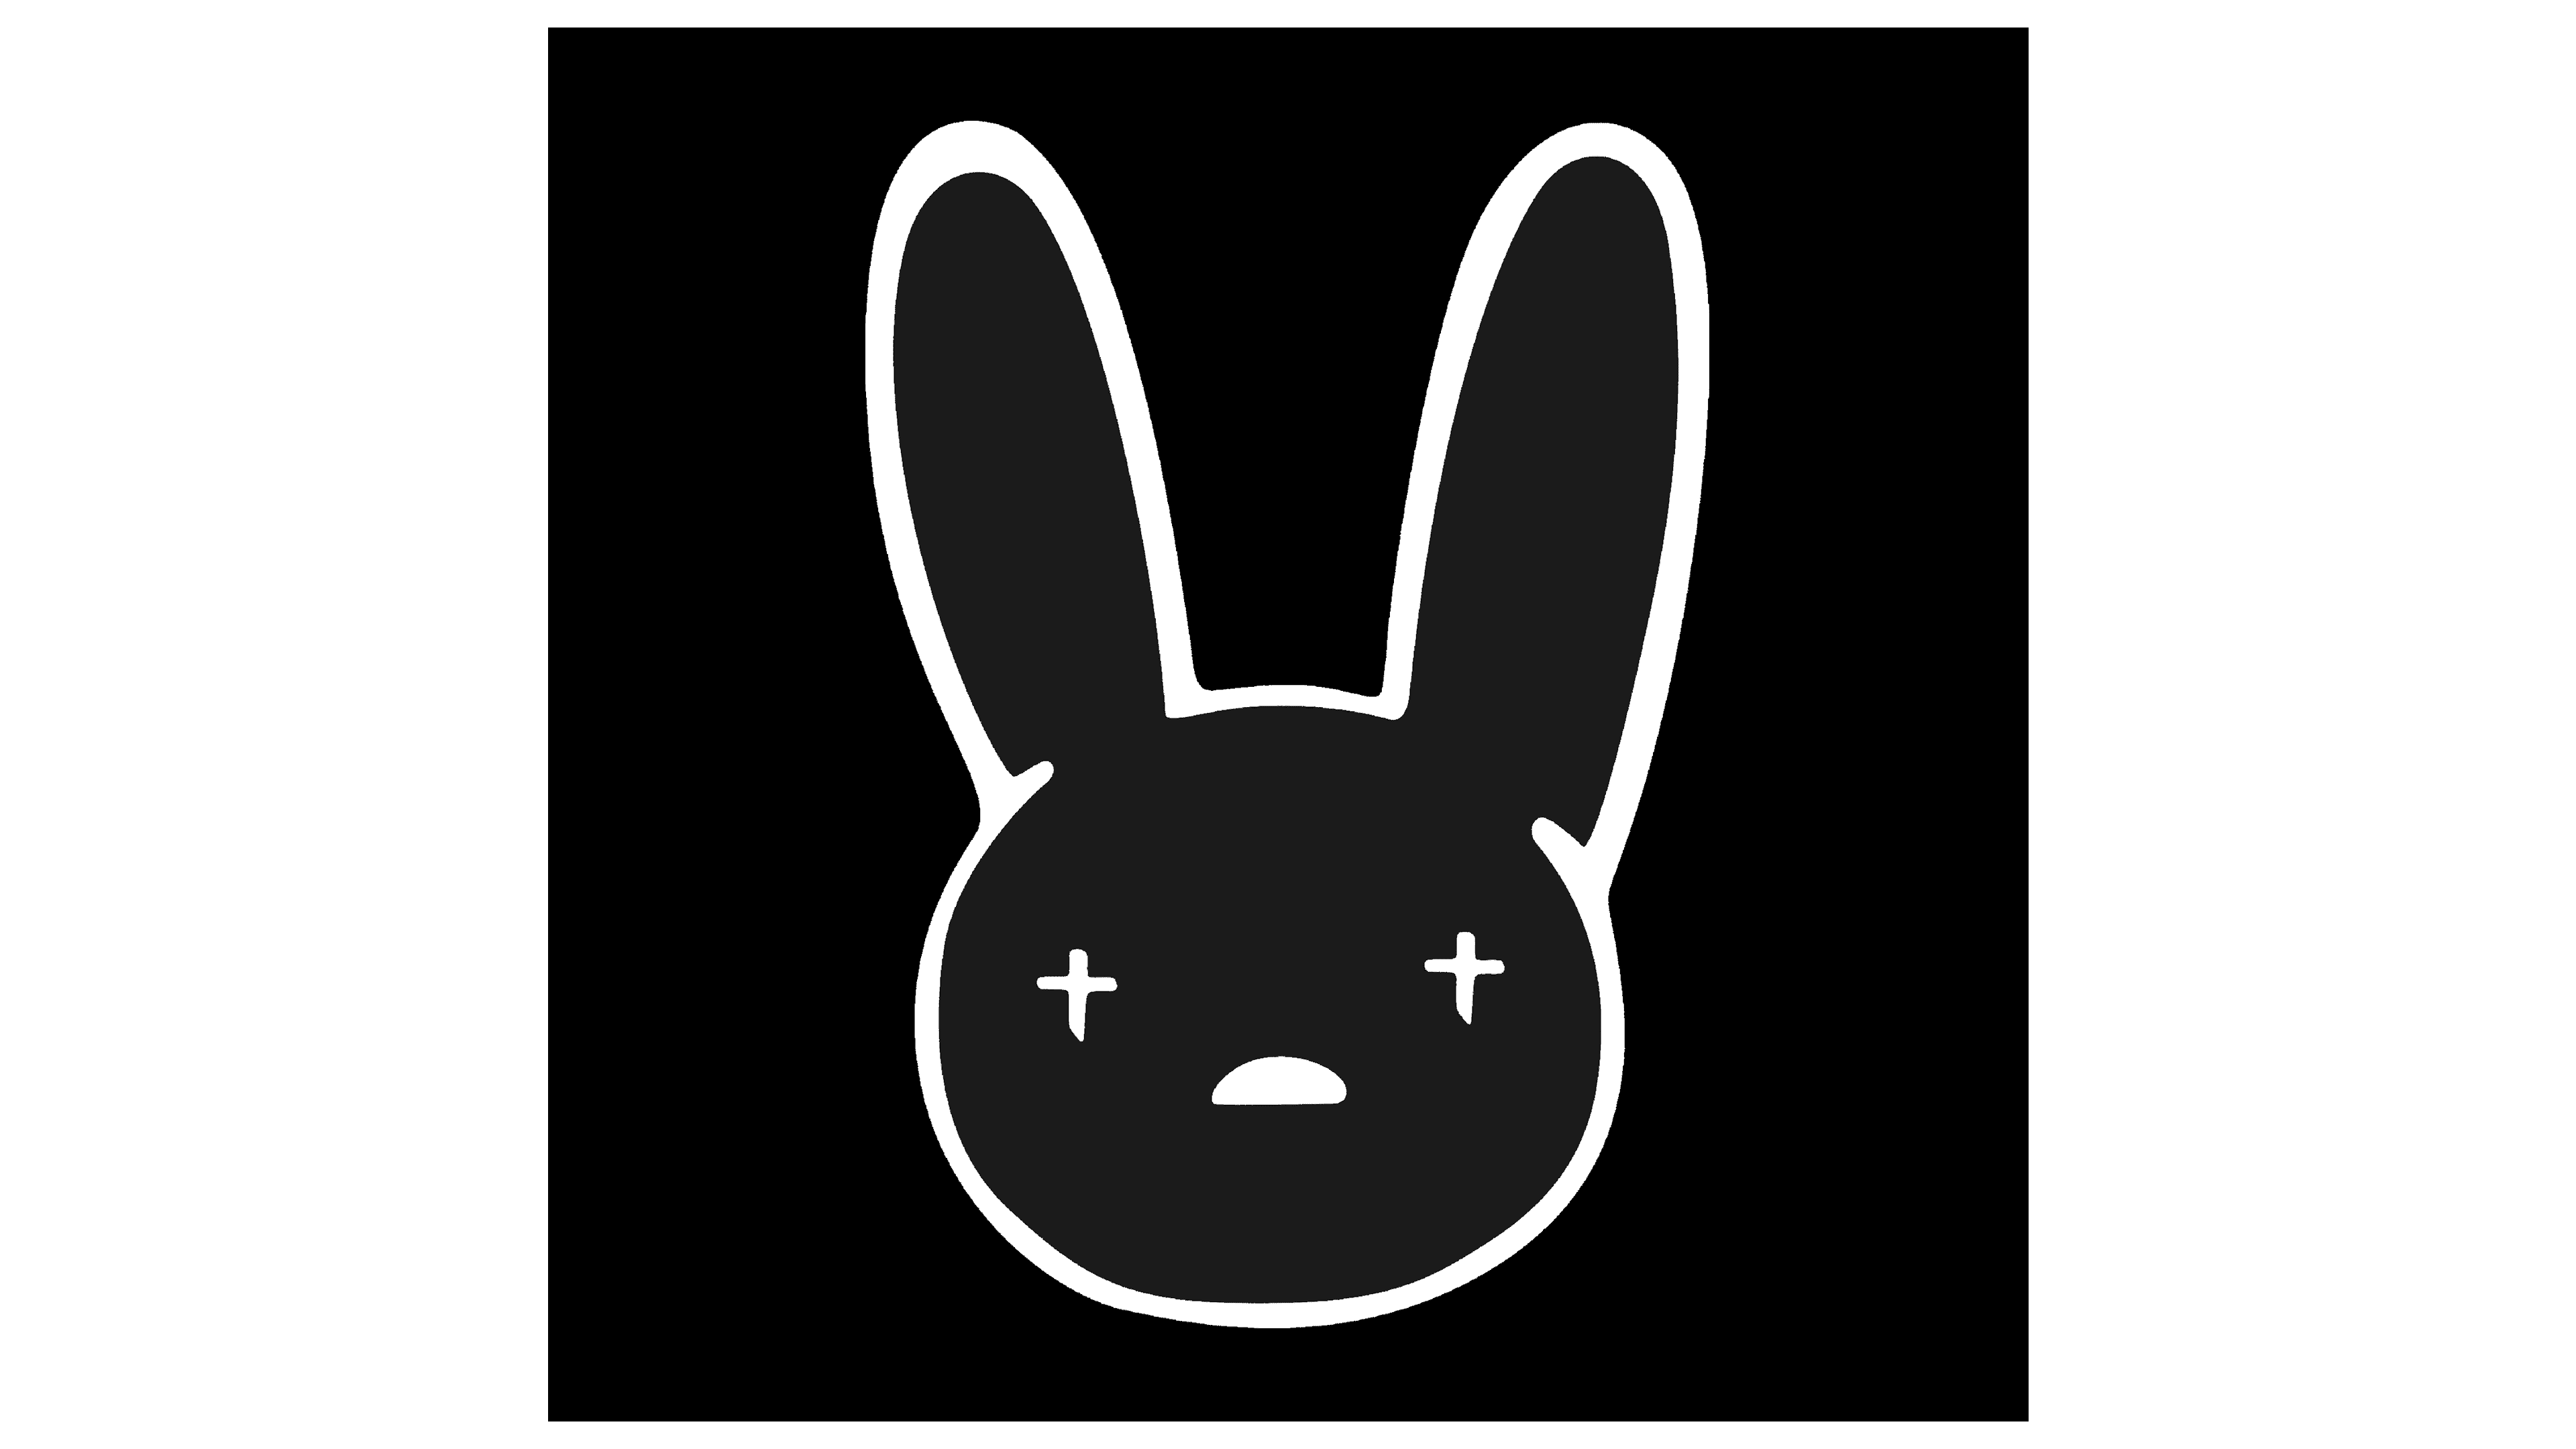 Bad Bunny Logos Yhlqmdlg Reverasite